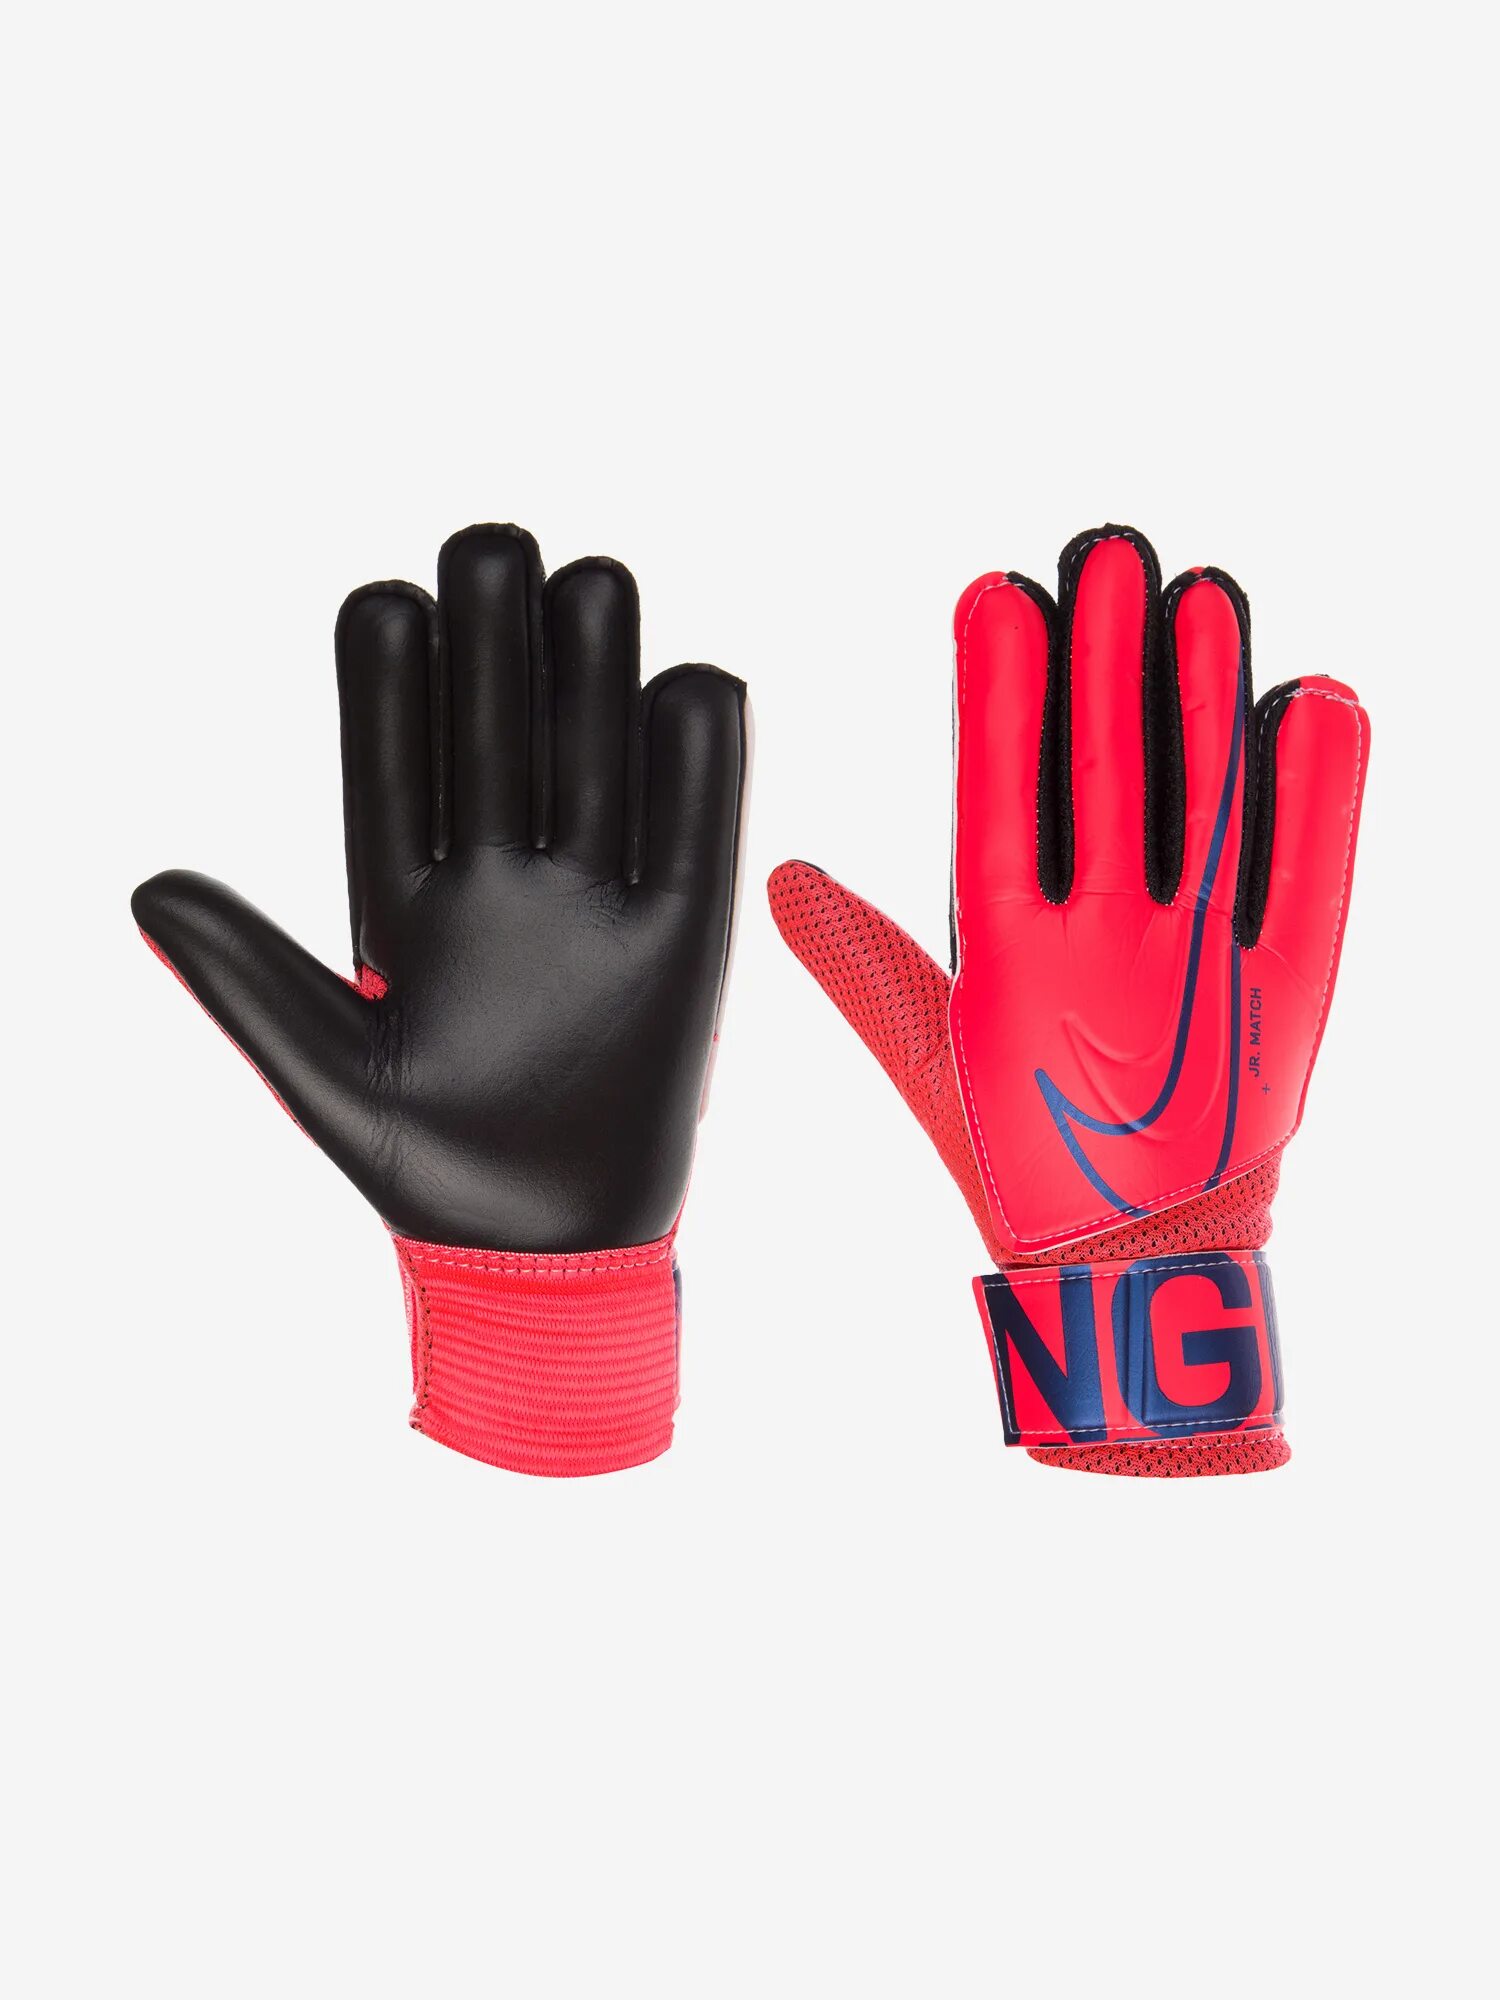 Вратарские перчатки найк Jr Match. Детские вратарские перчатки найк. Nike GK Match. Вратарские перчатки hard Touch.